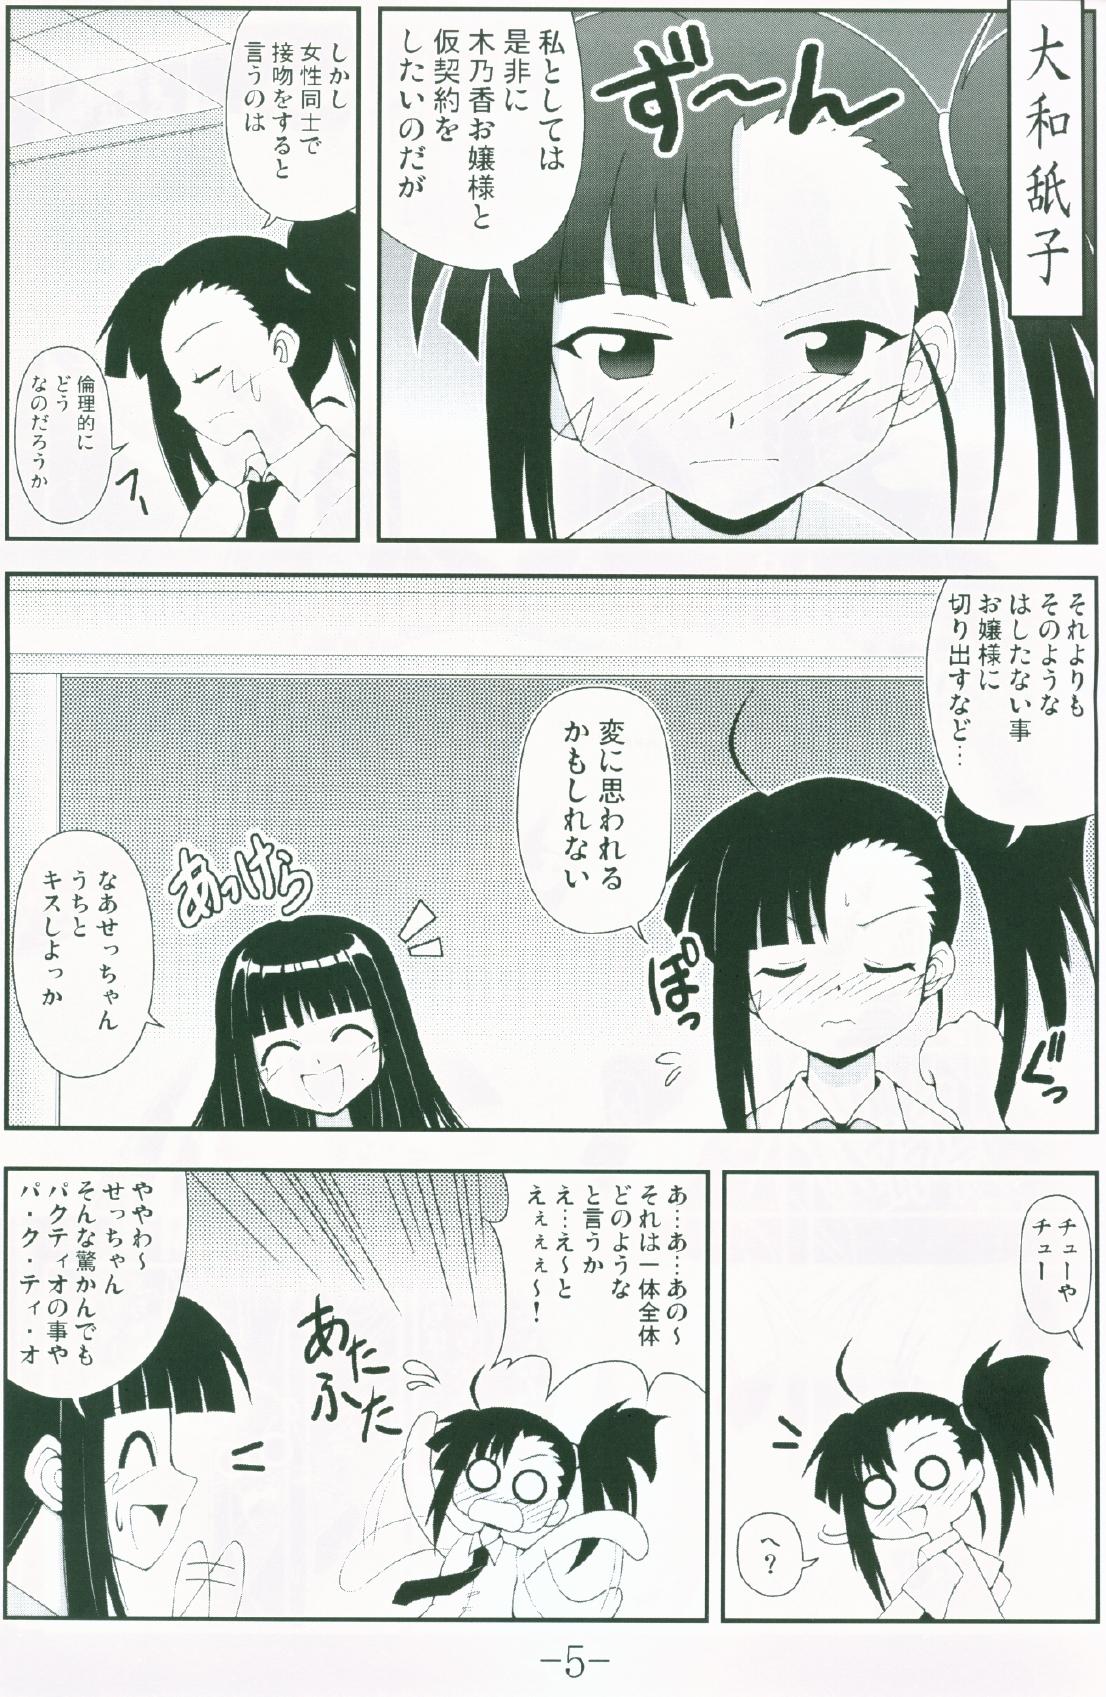 Funny Gurimaga ~ Yamato Shiko - Mahou sensei negima Blacks - Page 3